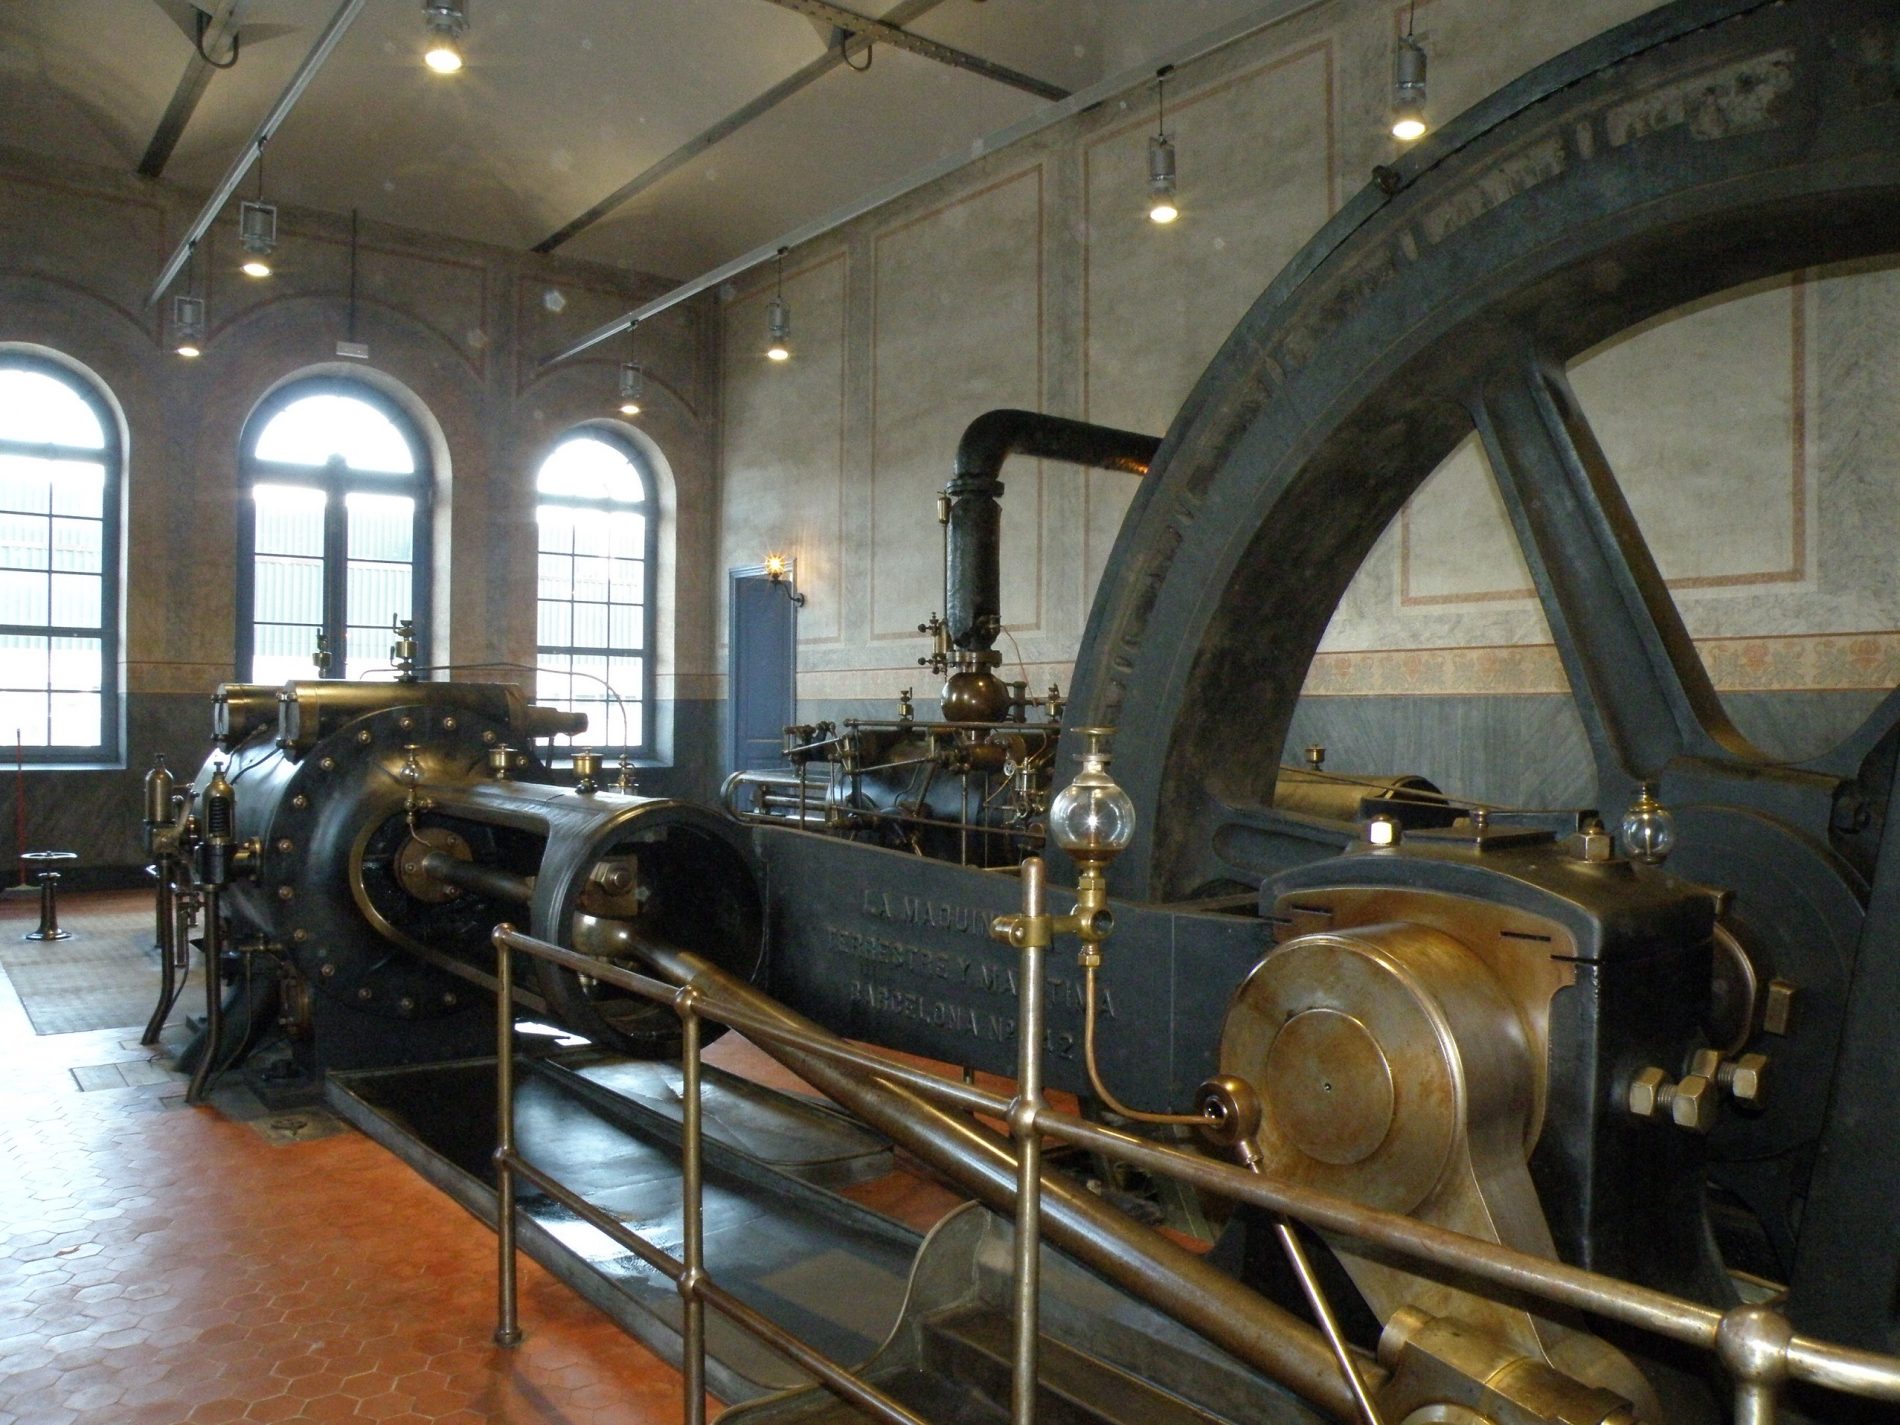 Steam engine from Burés, Anglès